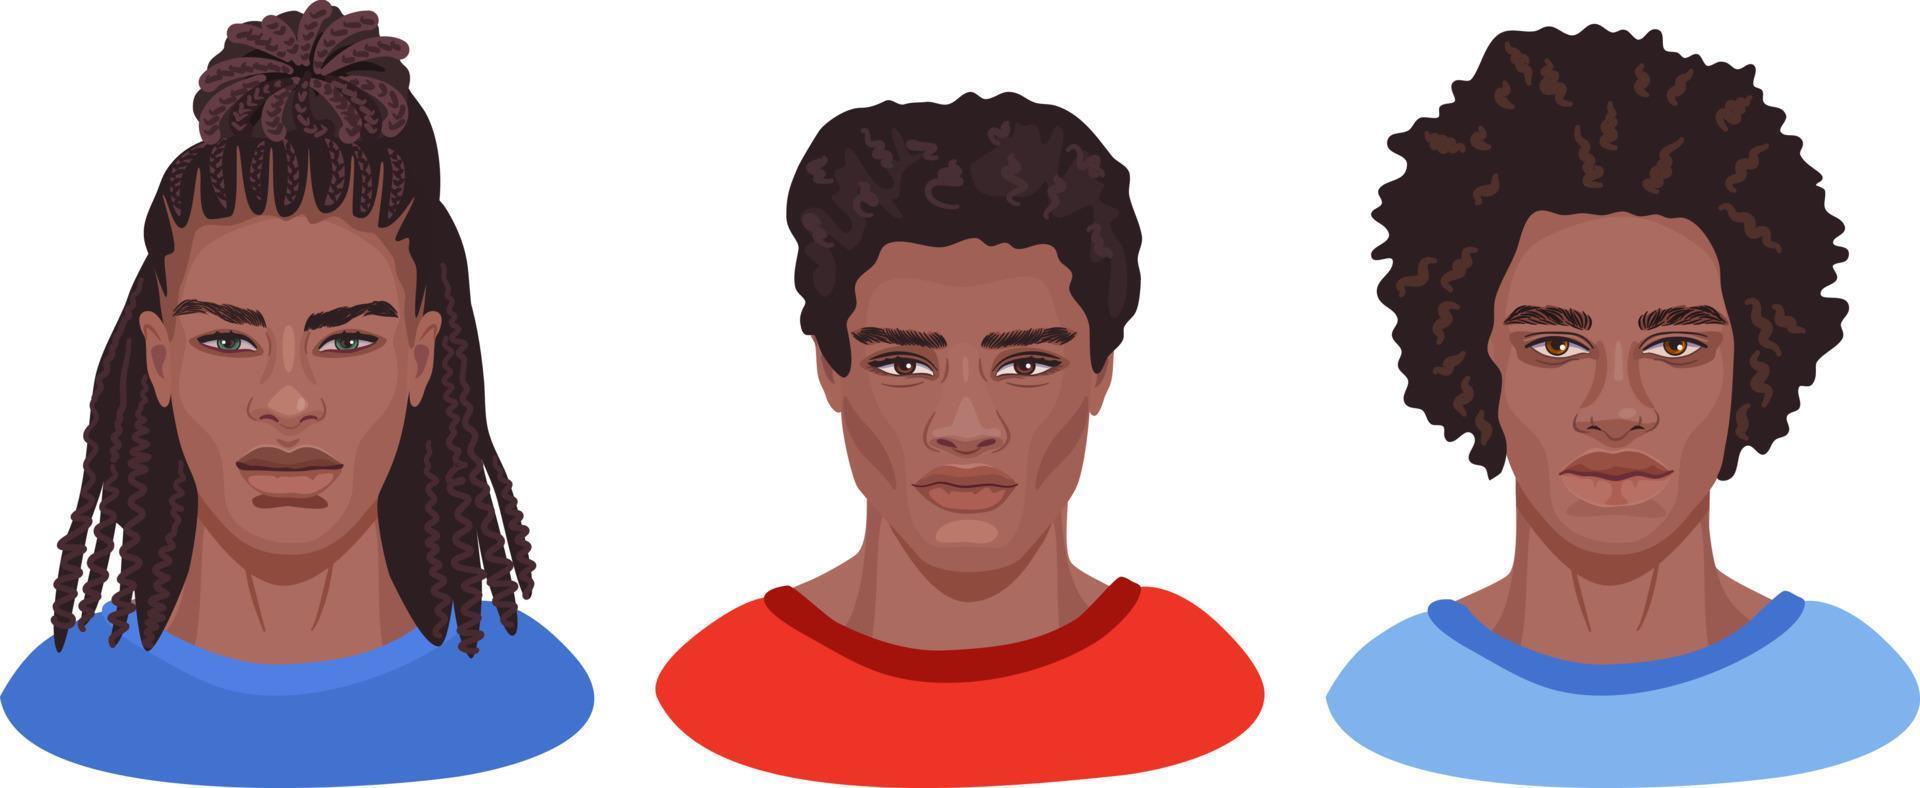 un conjunto de retratos masculinos detallados con diferentes peinados. apuestos hombres africanos en la cabeza adecuados para los avatares de las redes sociales. vector